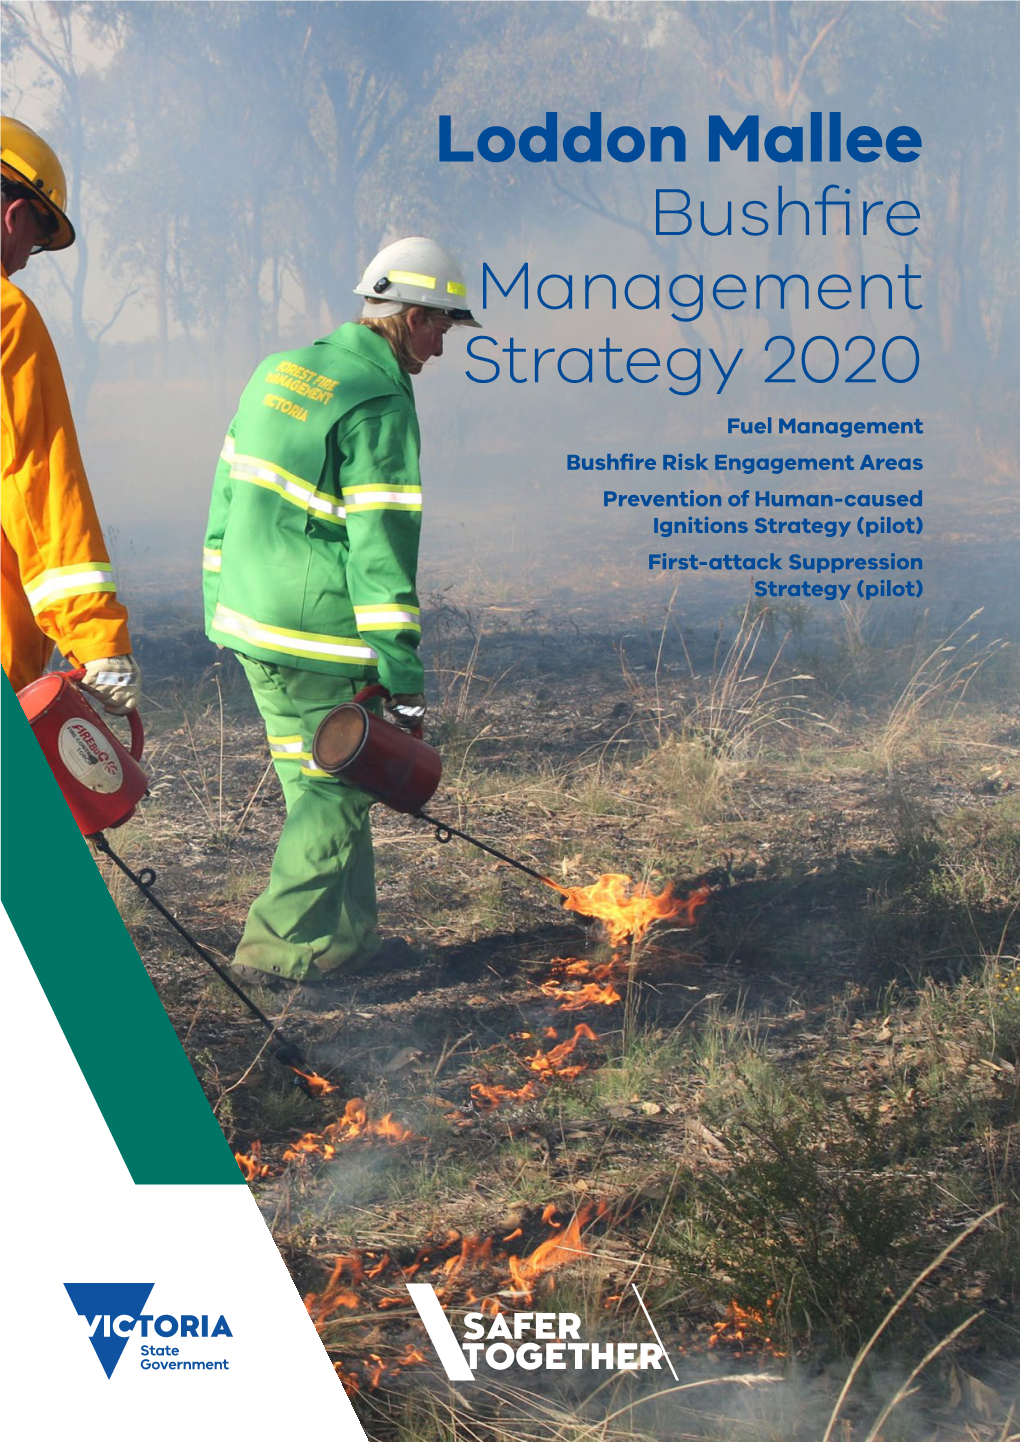 Loddon Mallee Bushfire Management Strategy 2020